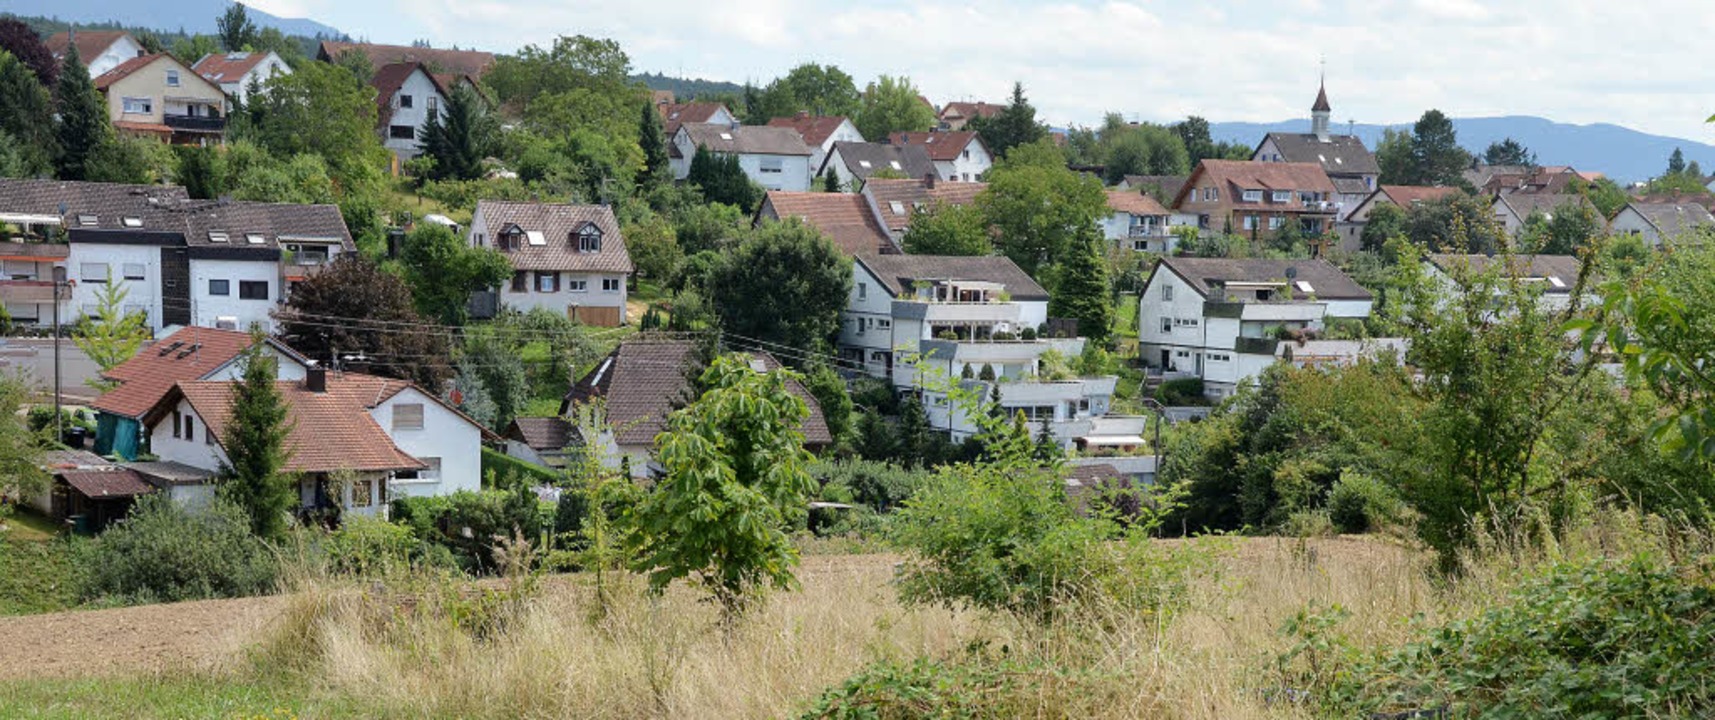 Das Baugebiet &#8222;Wanne&#8220; in Windenreute  | Foto: Archivfoto: Sylvia-Karina Jahn